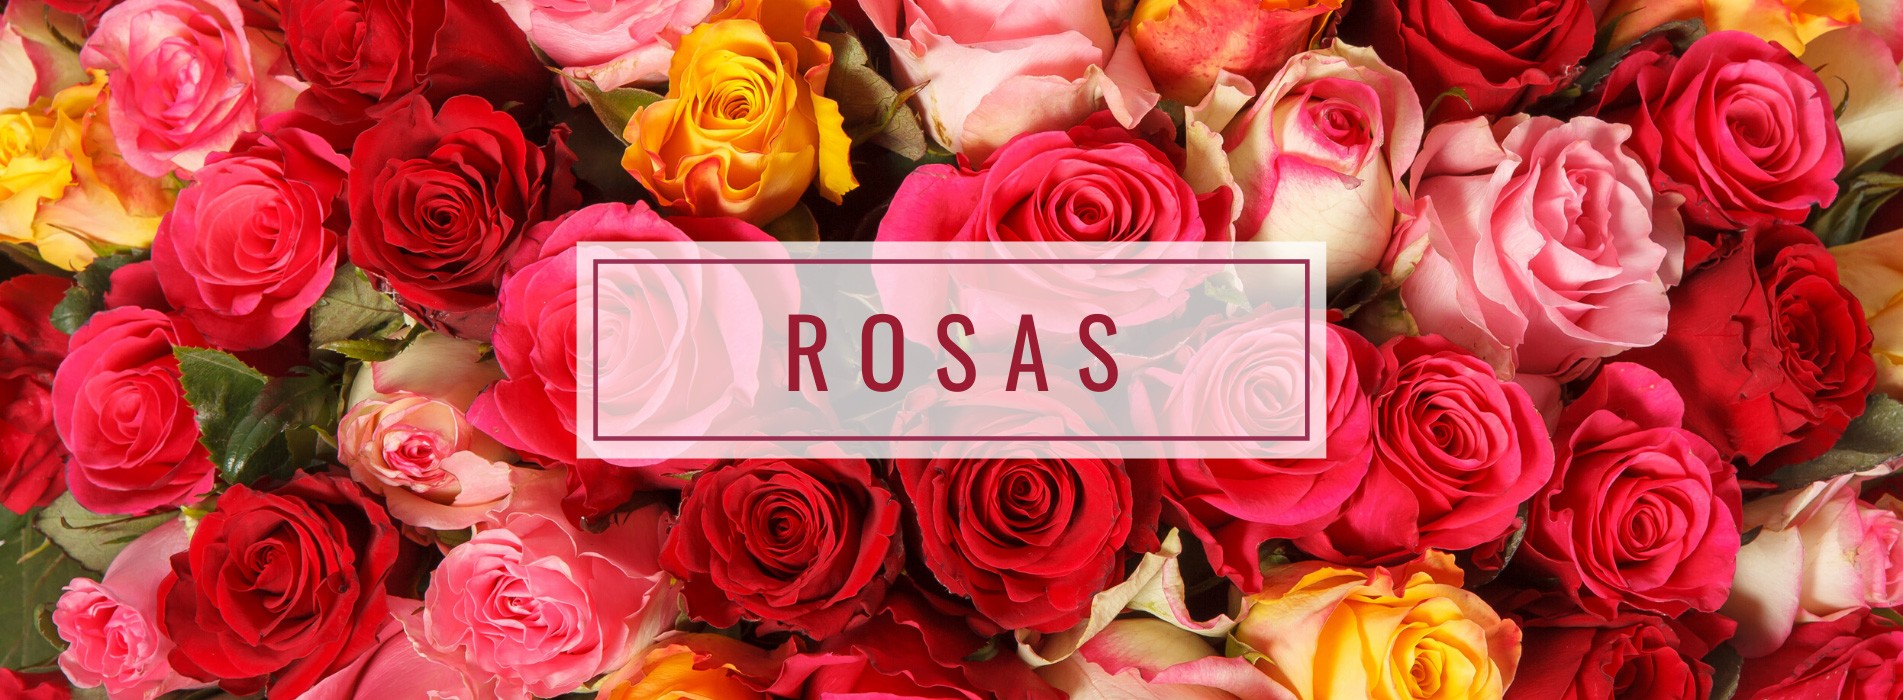 Coleção Rosas